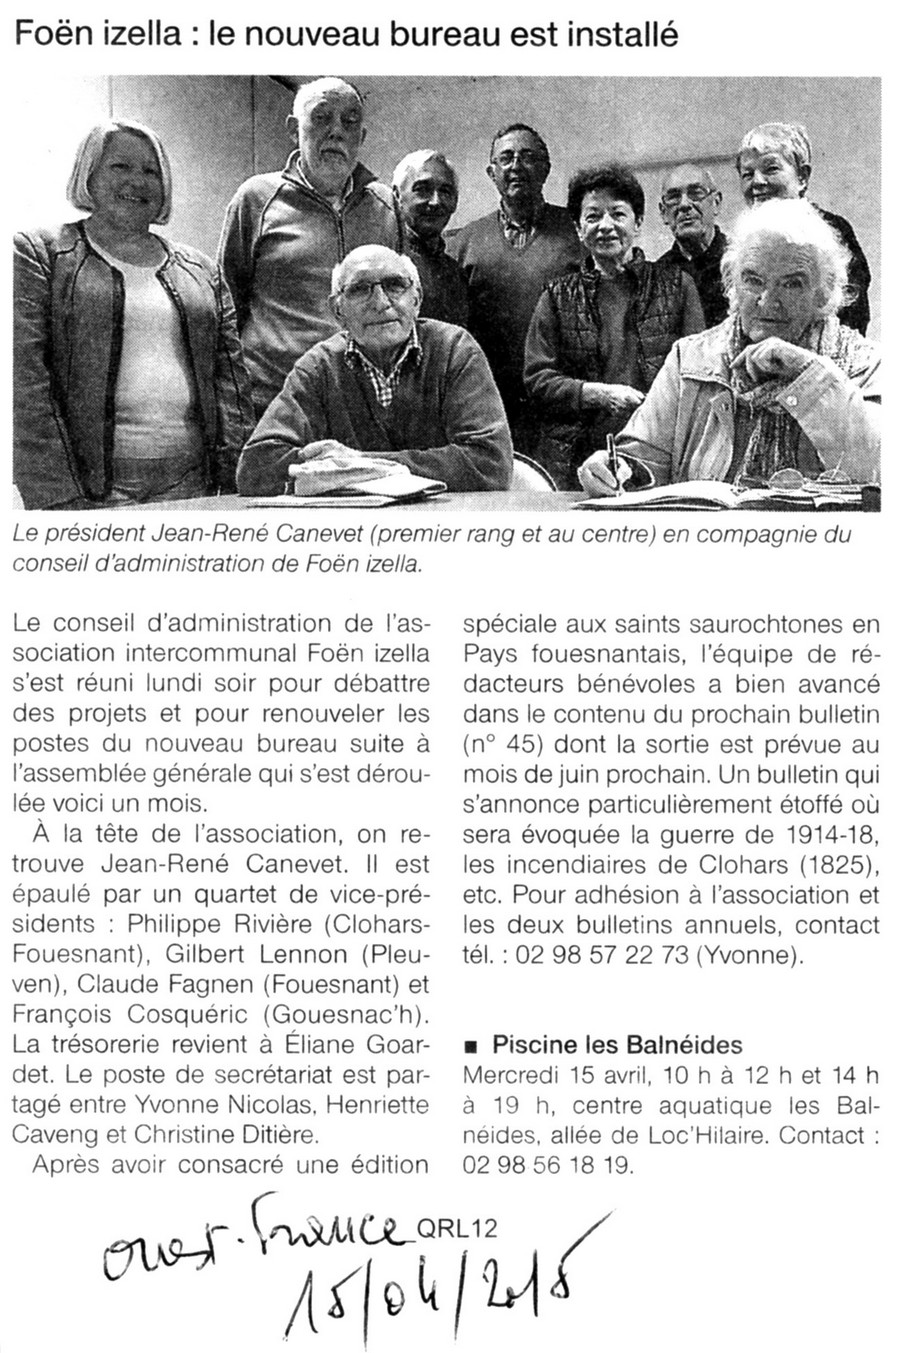 Article du Ouest France du 15/04/15 sur le nouveau Bureau de Foen Izella